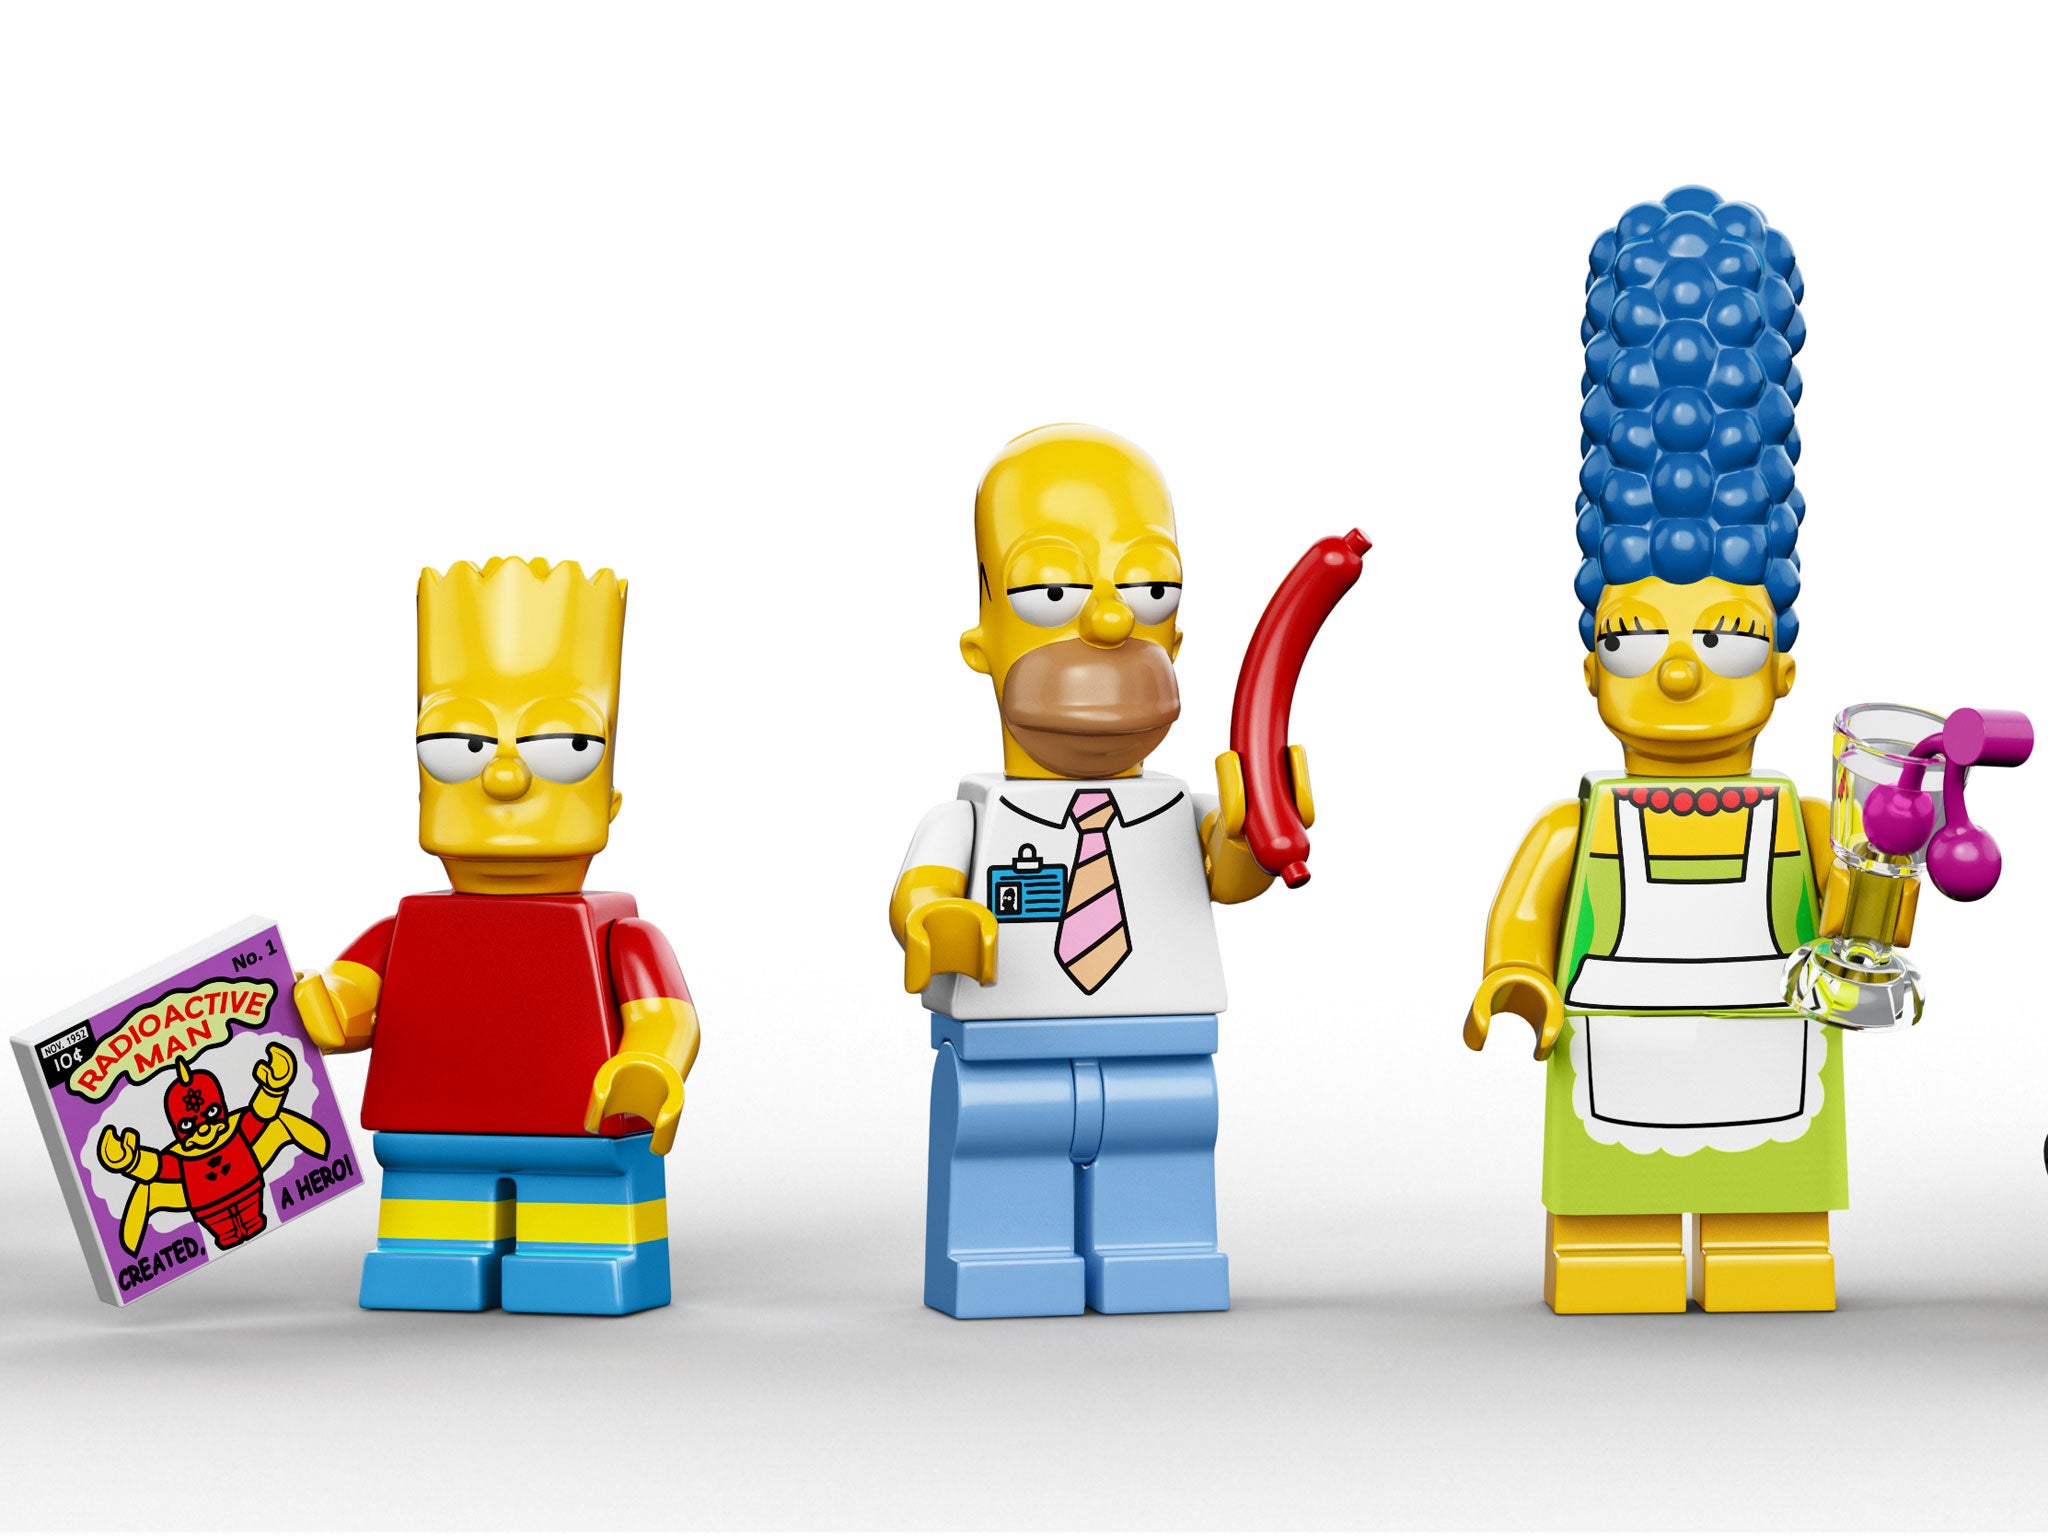 LEGO IDEAS - The Simpsons House (LEGO Style)